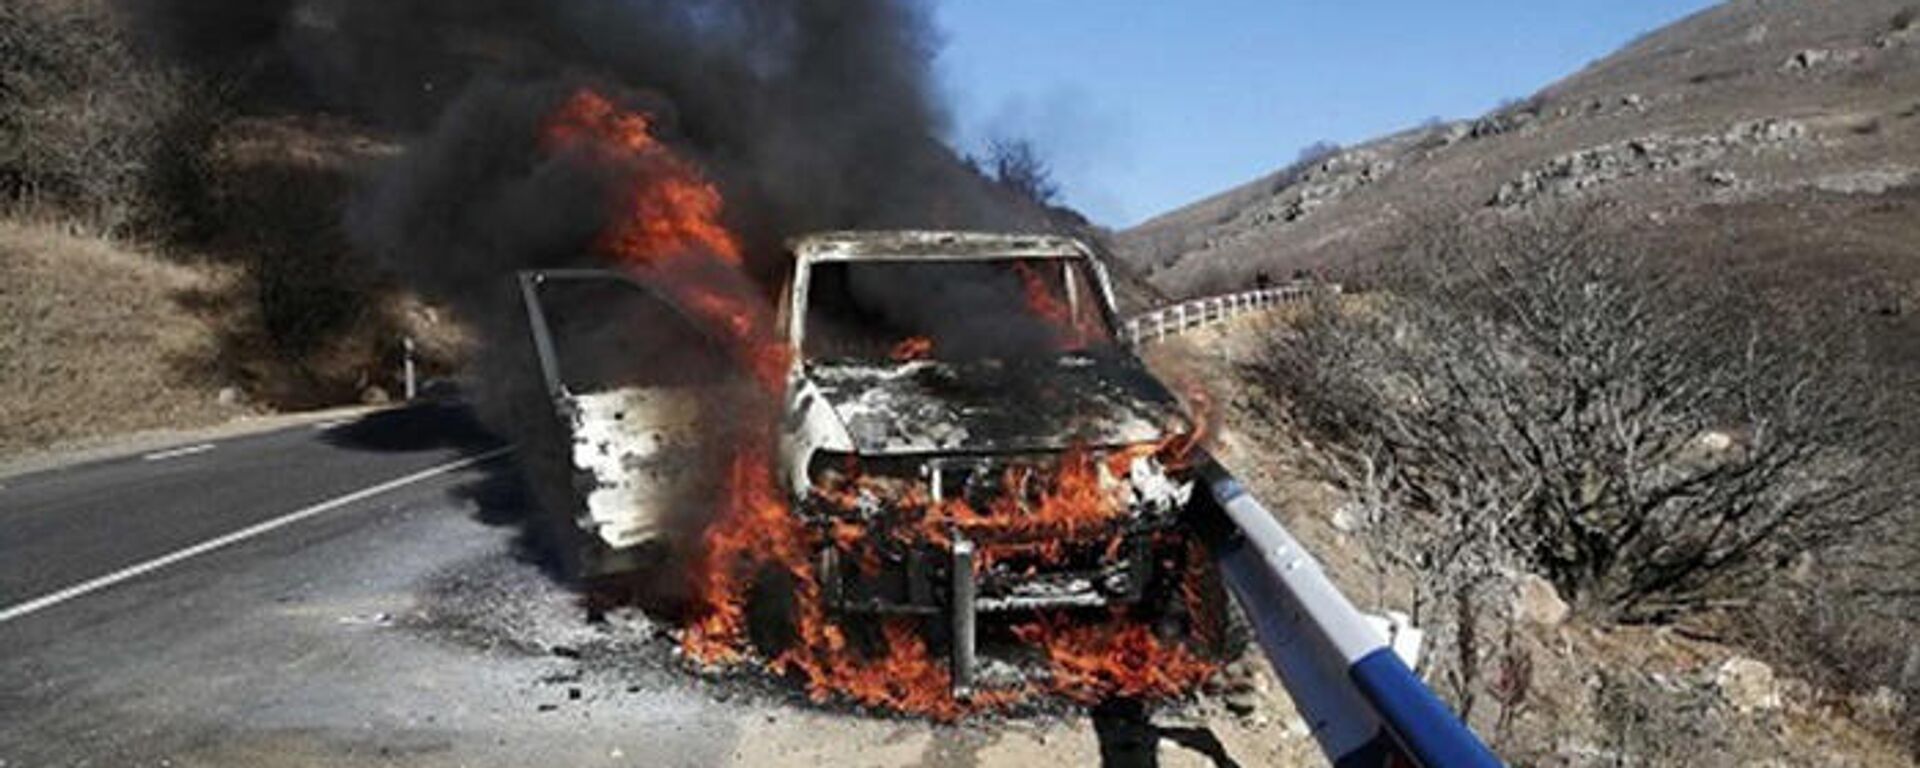 Կապան-Աղվանի ավտոճանապարհին մեքենա է այրվել - Sputnik Արմենիա, 1920, 14.12.2021